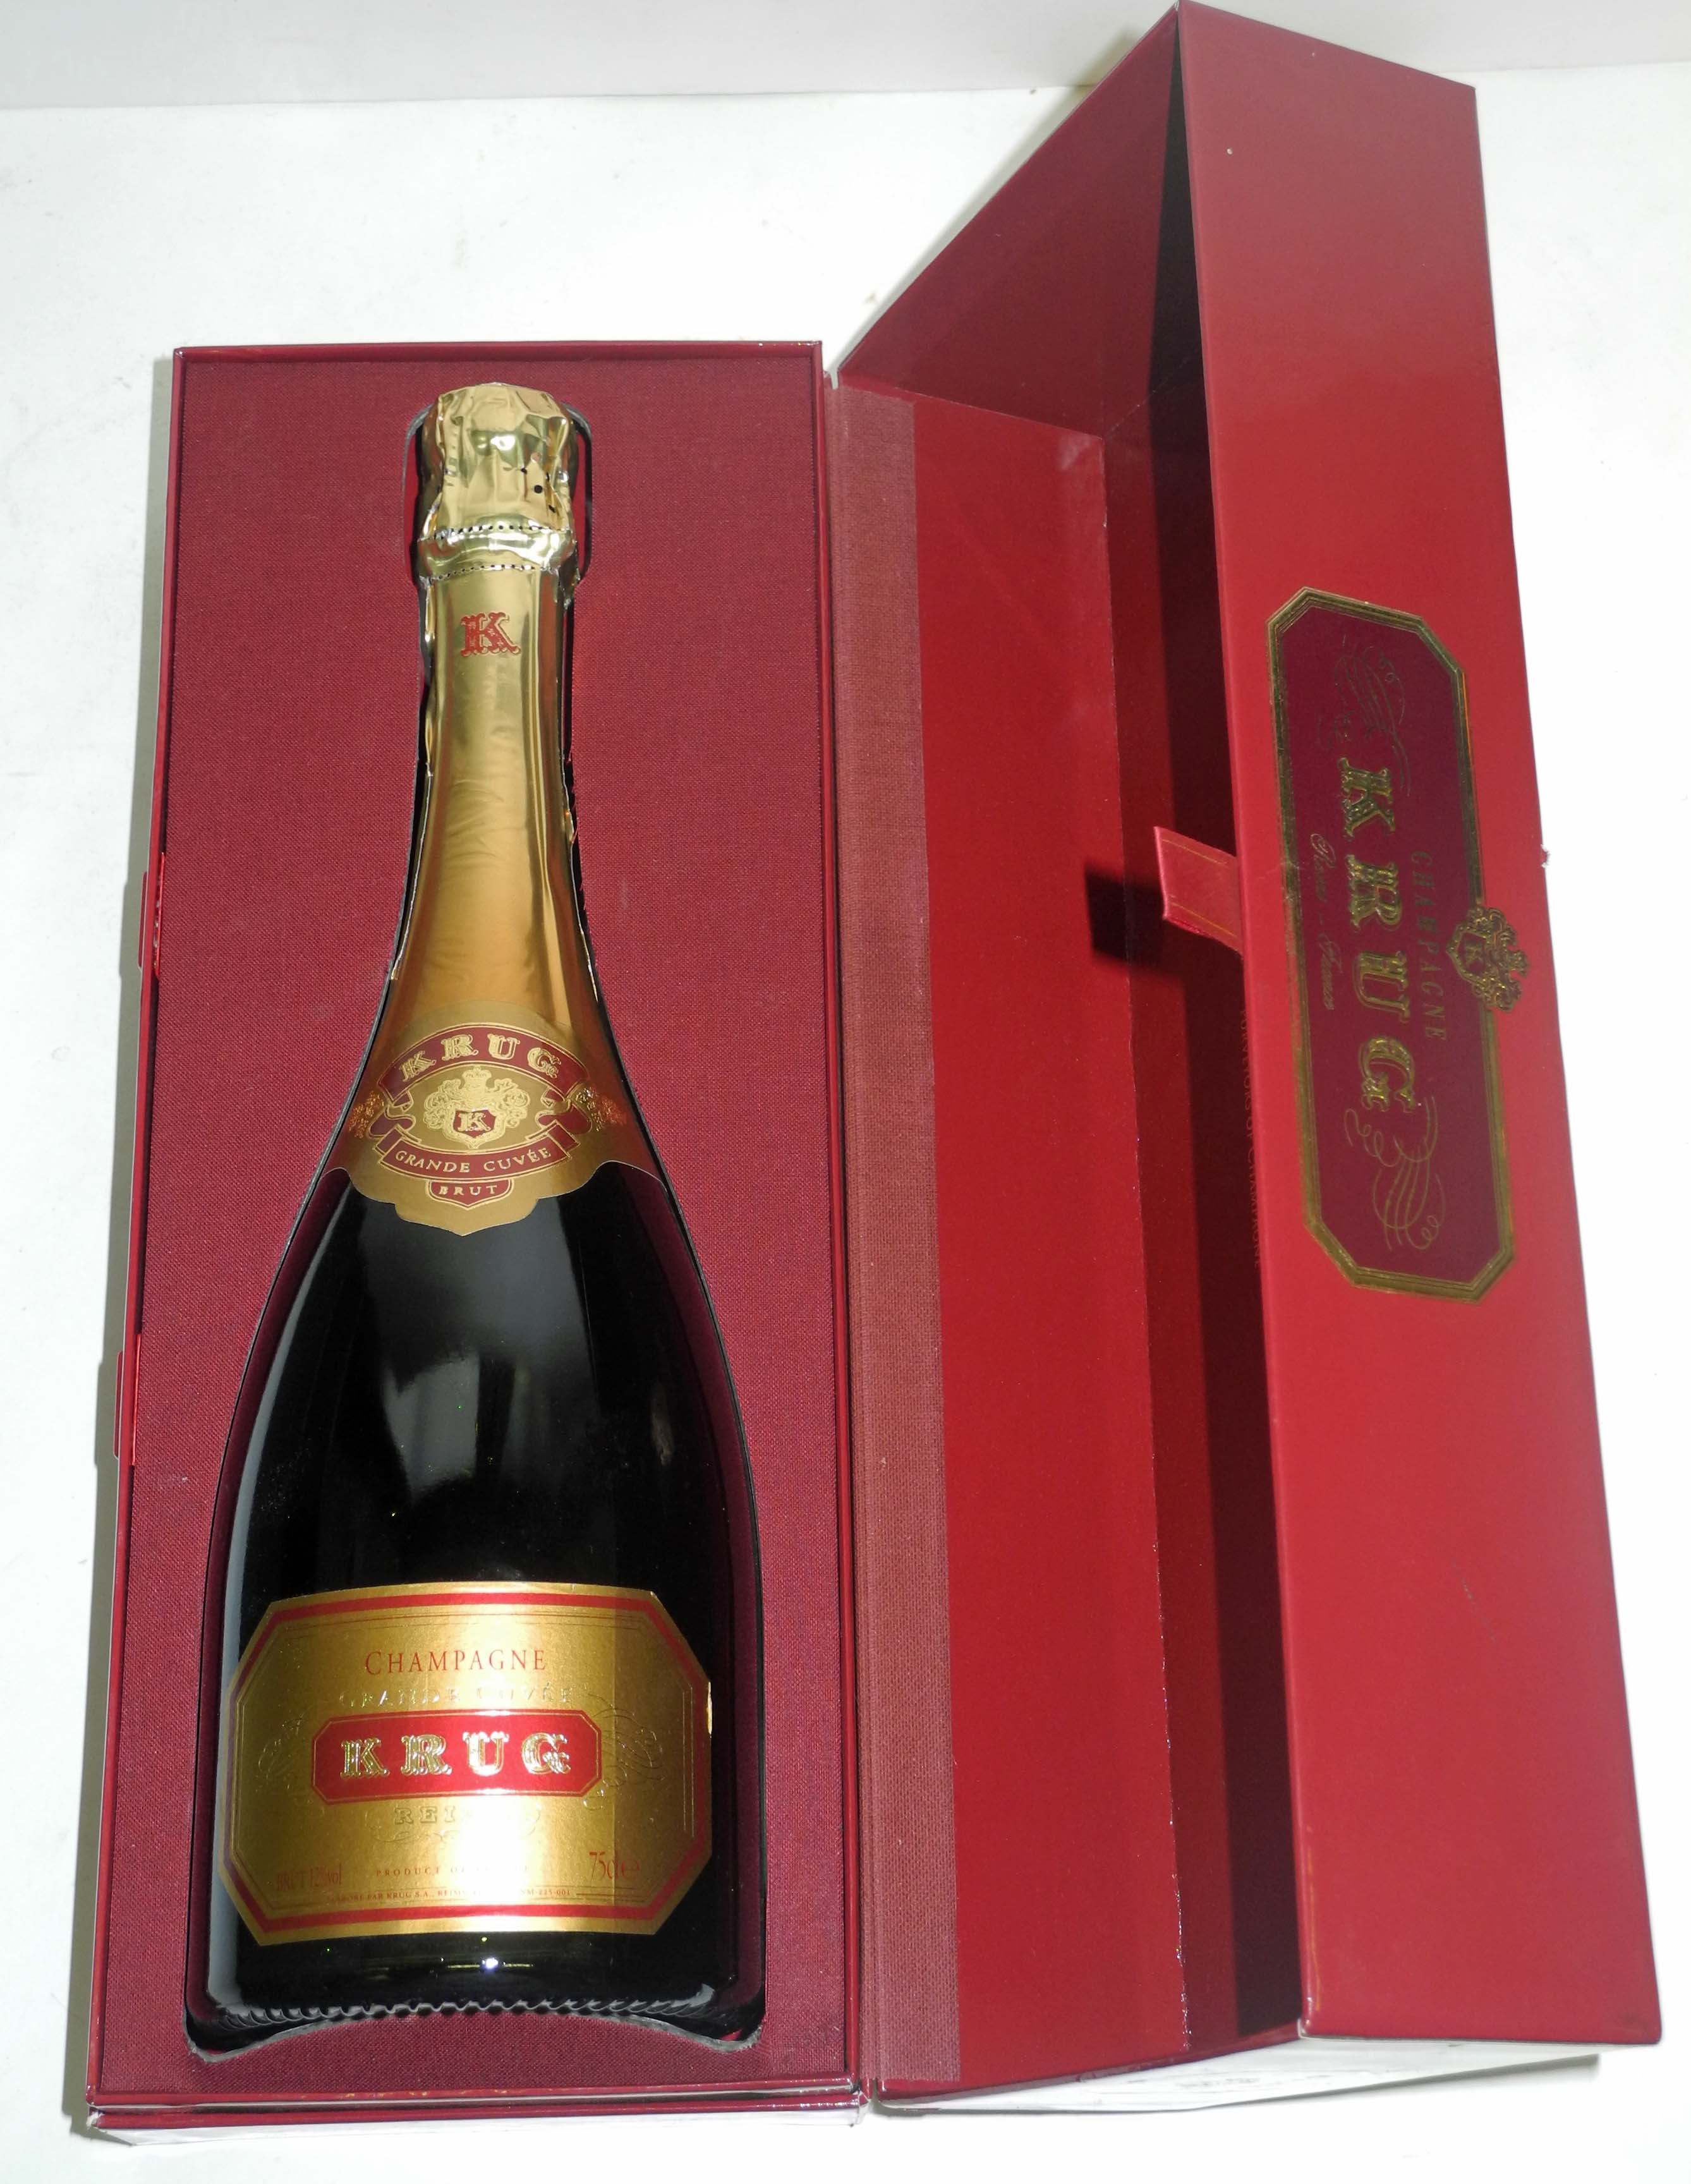 A bottle of Krug Grande Cuvée champagne, cased.